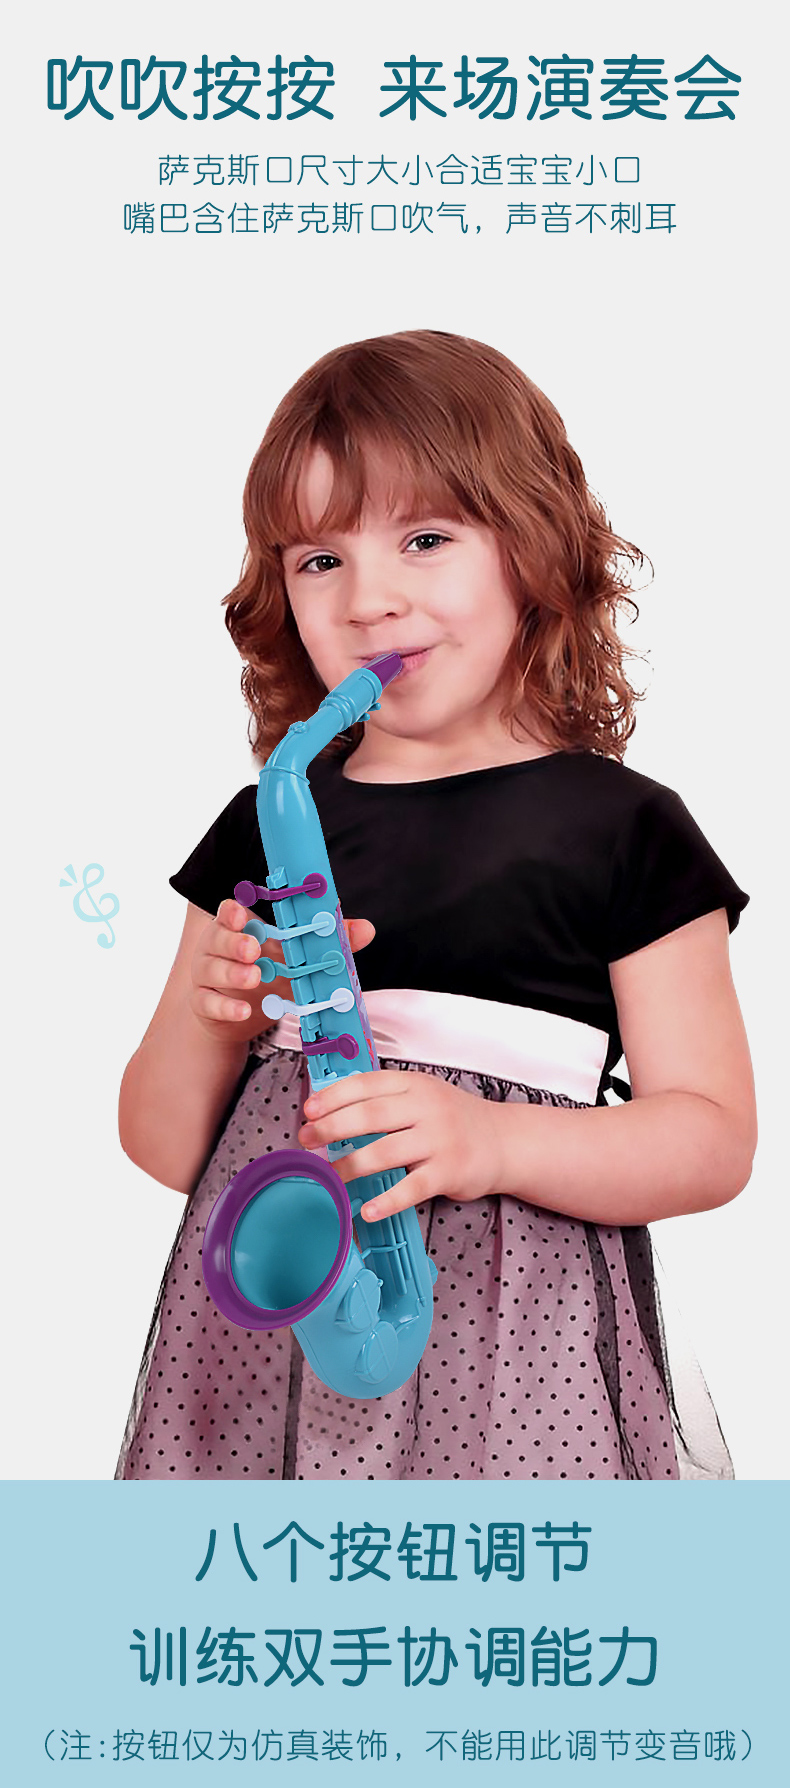 贝芬乐（buddyfun）迪士尼冰雪奇缘小号萨克斯笛子多乐器组合可吹响儿童音乐早教玩具 66328